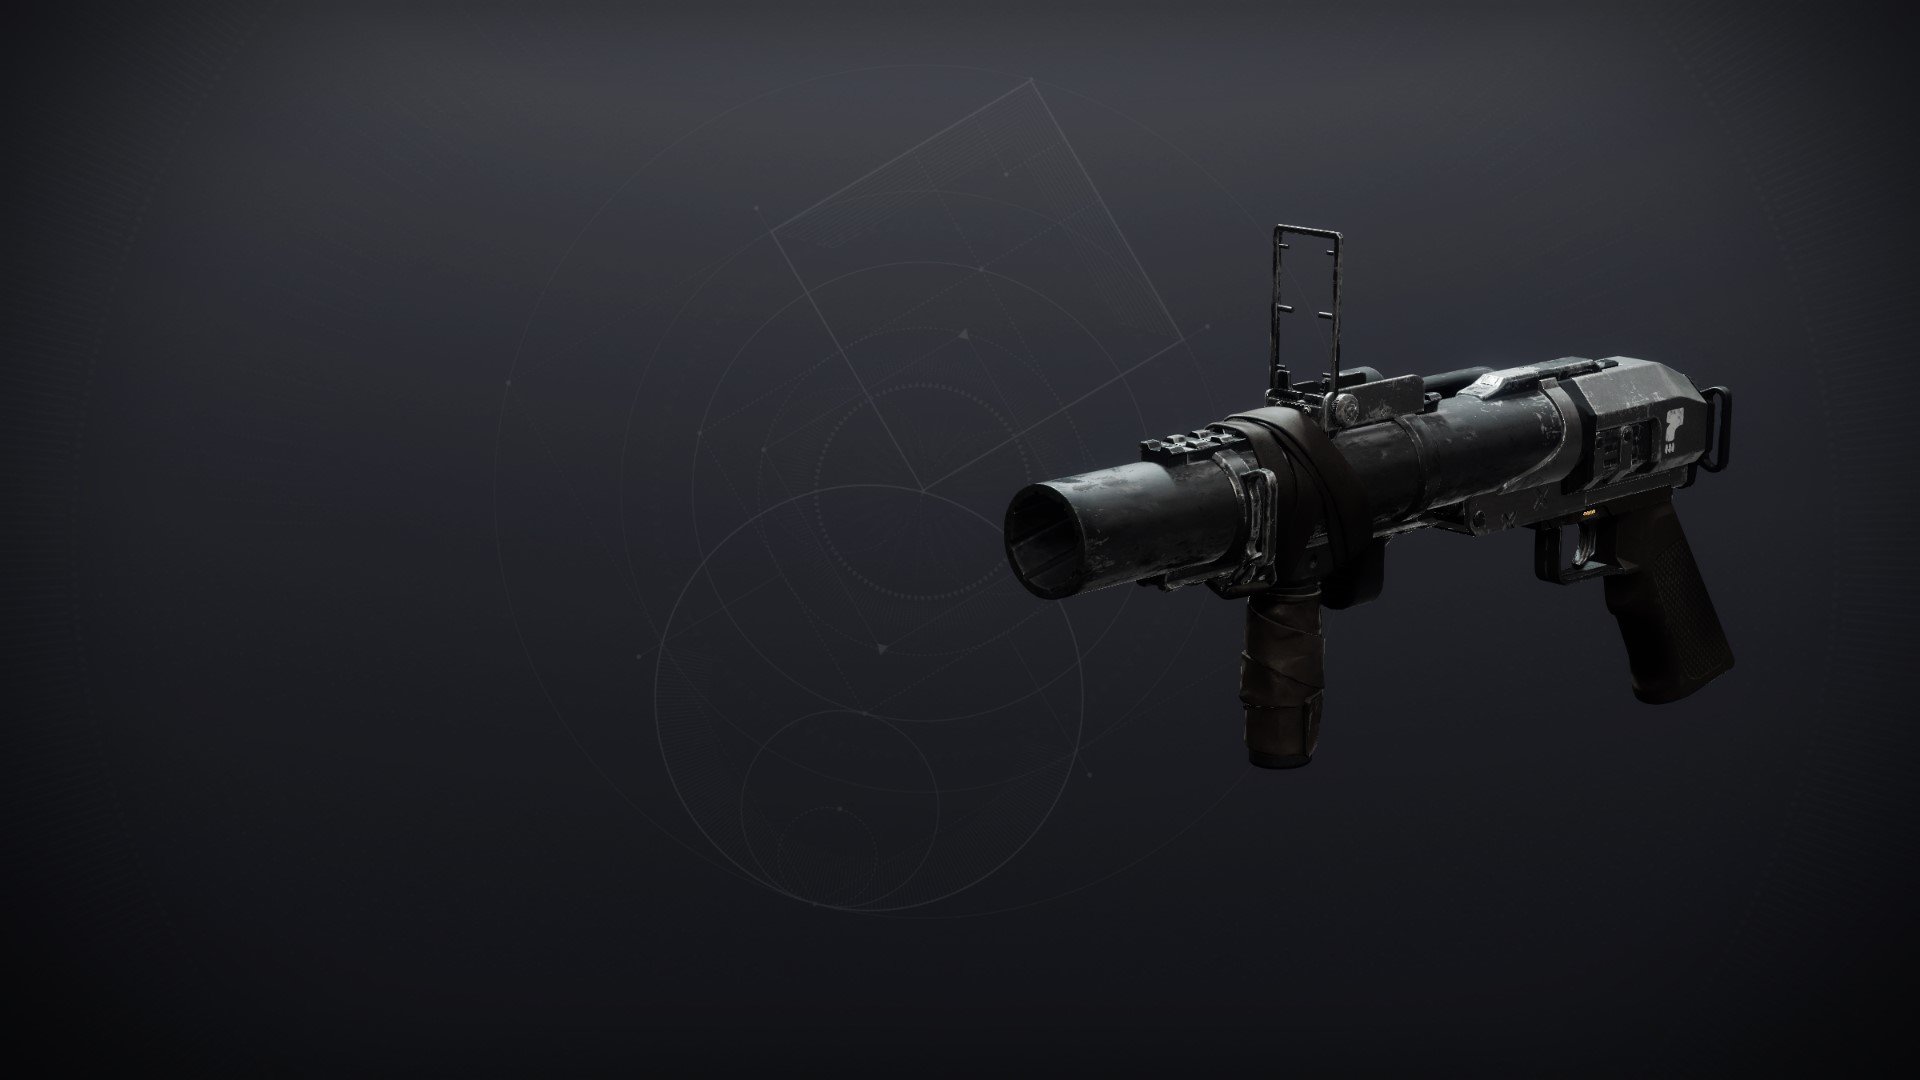 Destiny 2 Truthteller Grenade Launcher - Stats and Perks